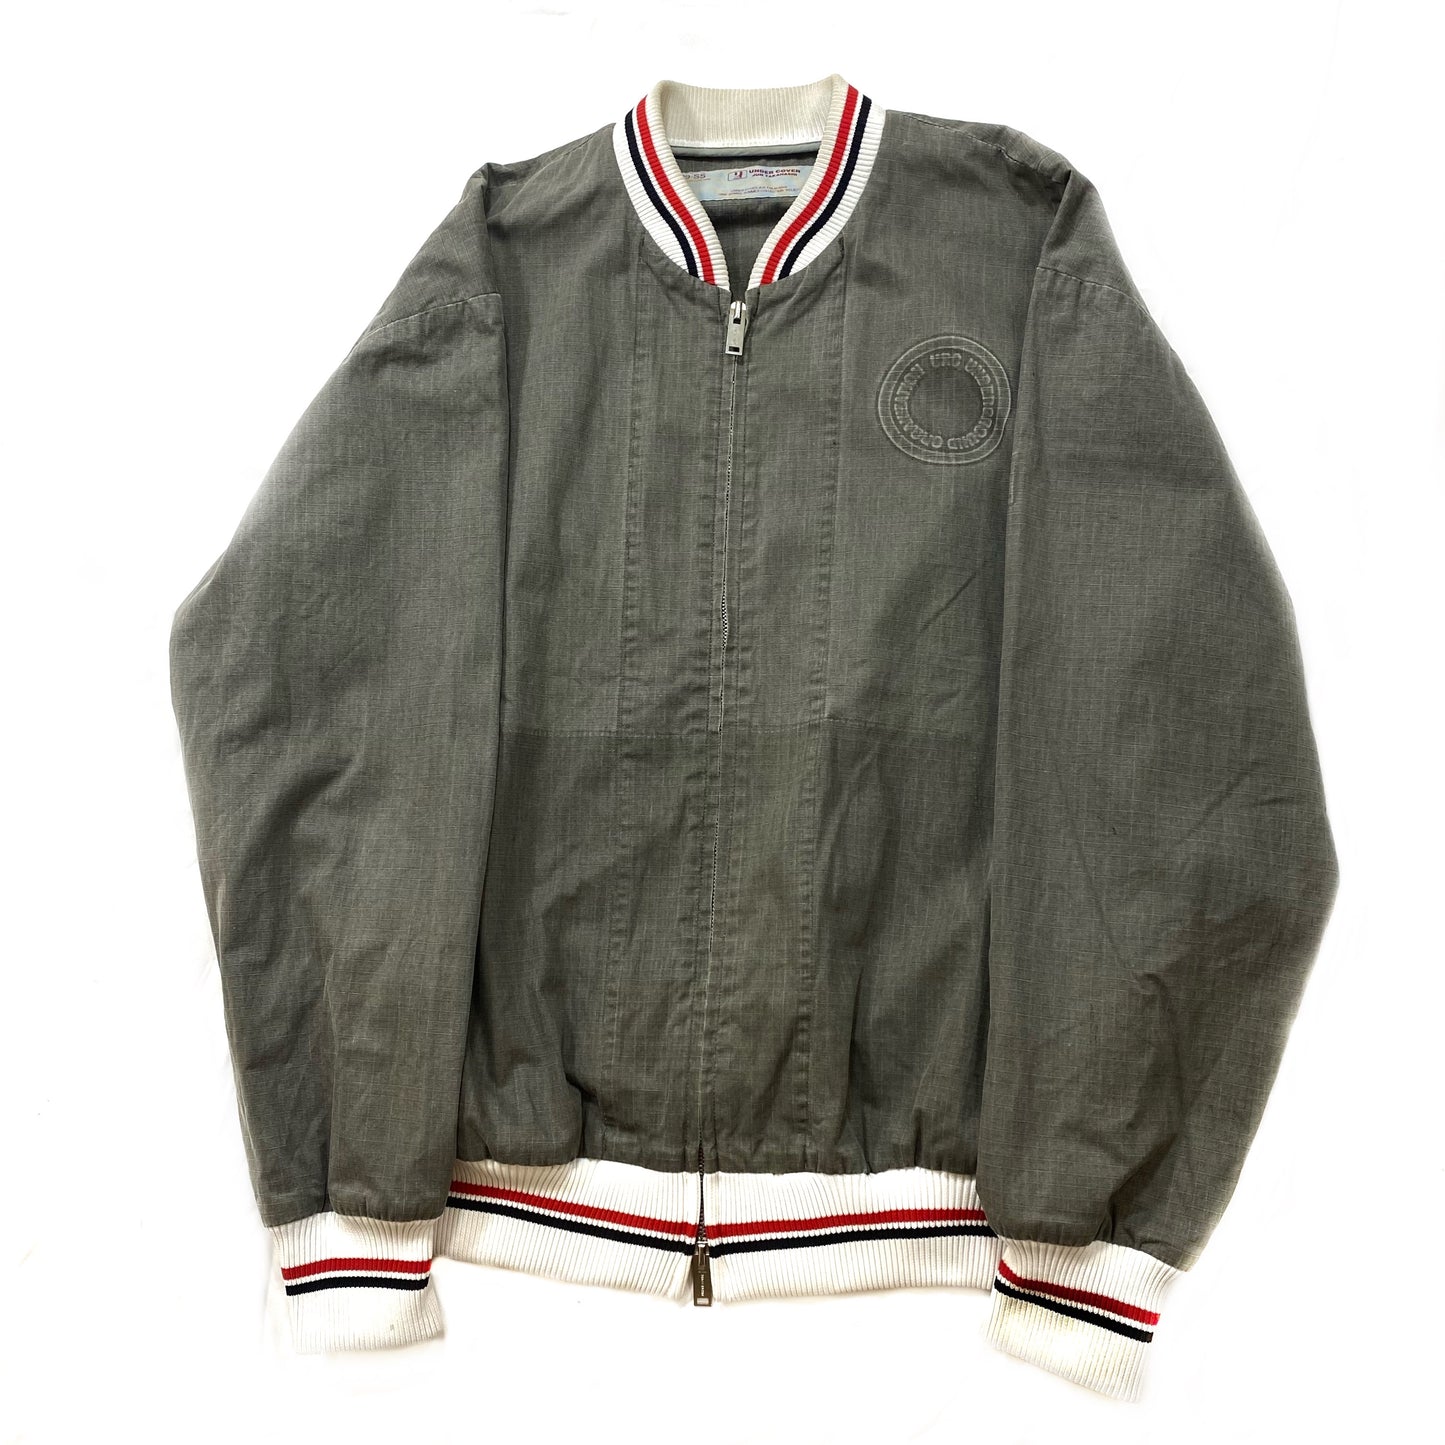 Undercover Zip Up Varsity Jacket S/S99 “Relief”